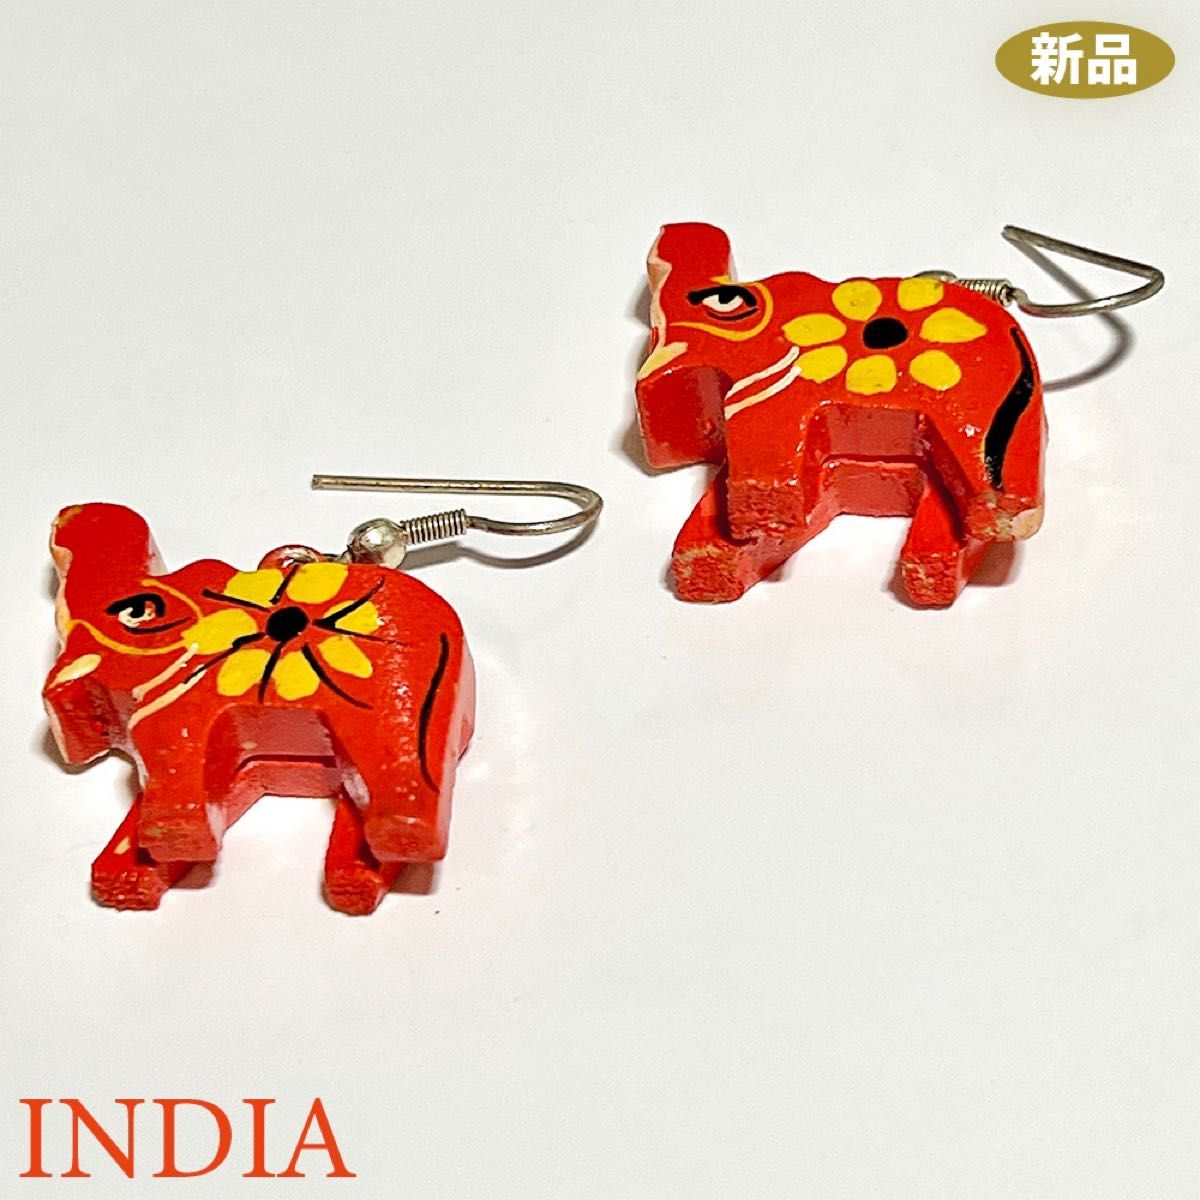 【新品】インド 木彫り ピアス 赤い象 手描き